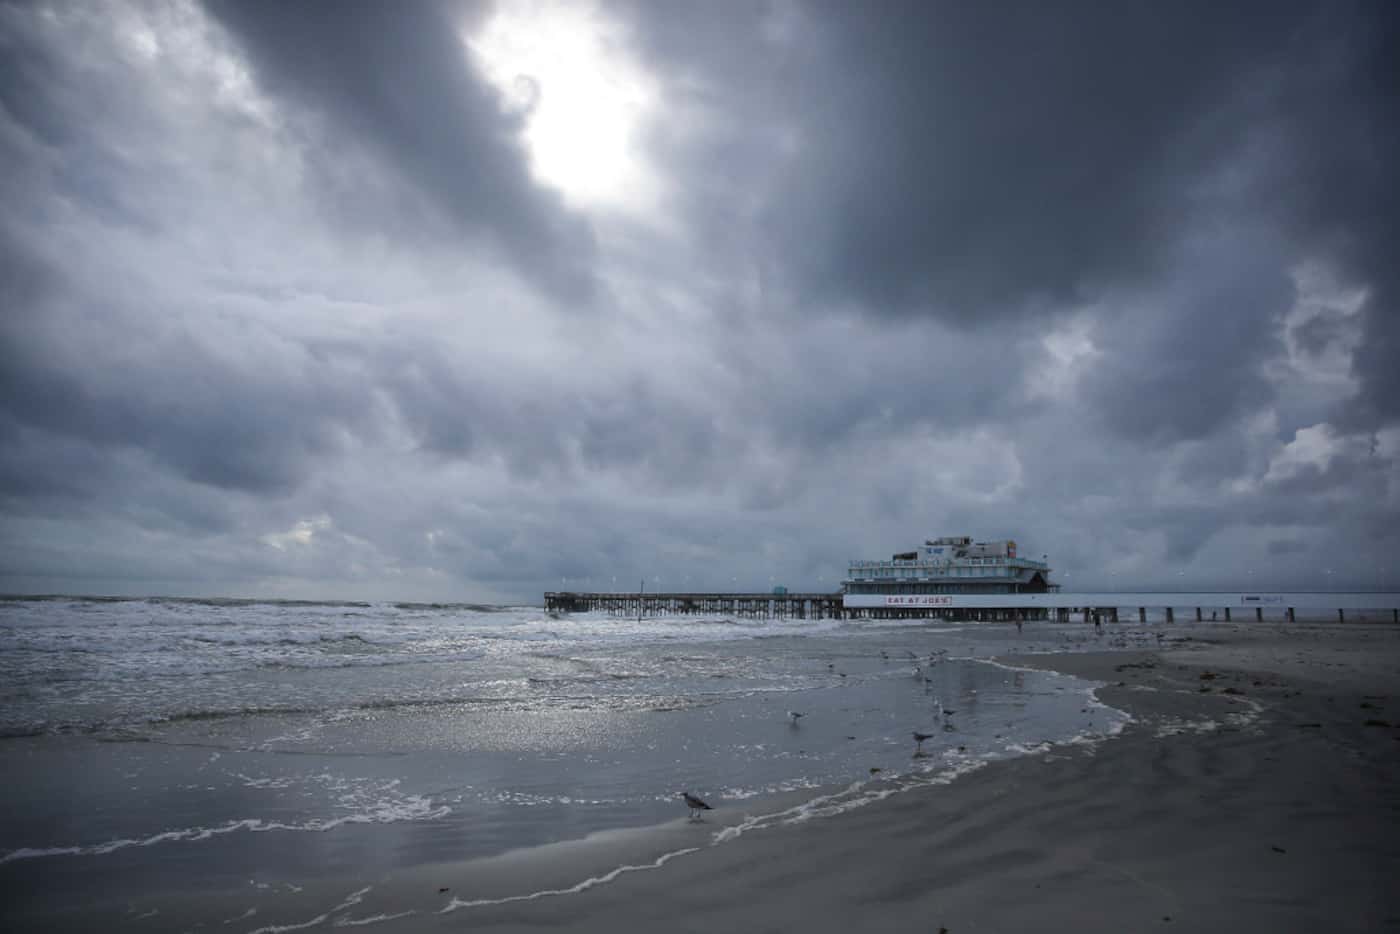 Clouds cover the sky over the beach near the Daytona Beach Boardwalk and Pier on Thursday.